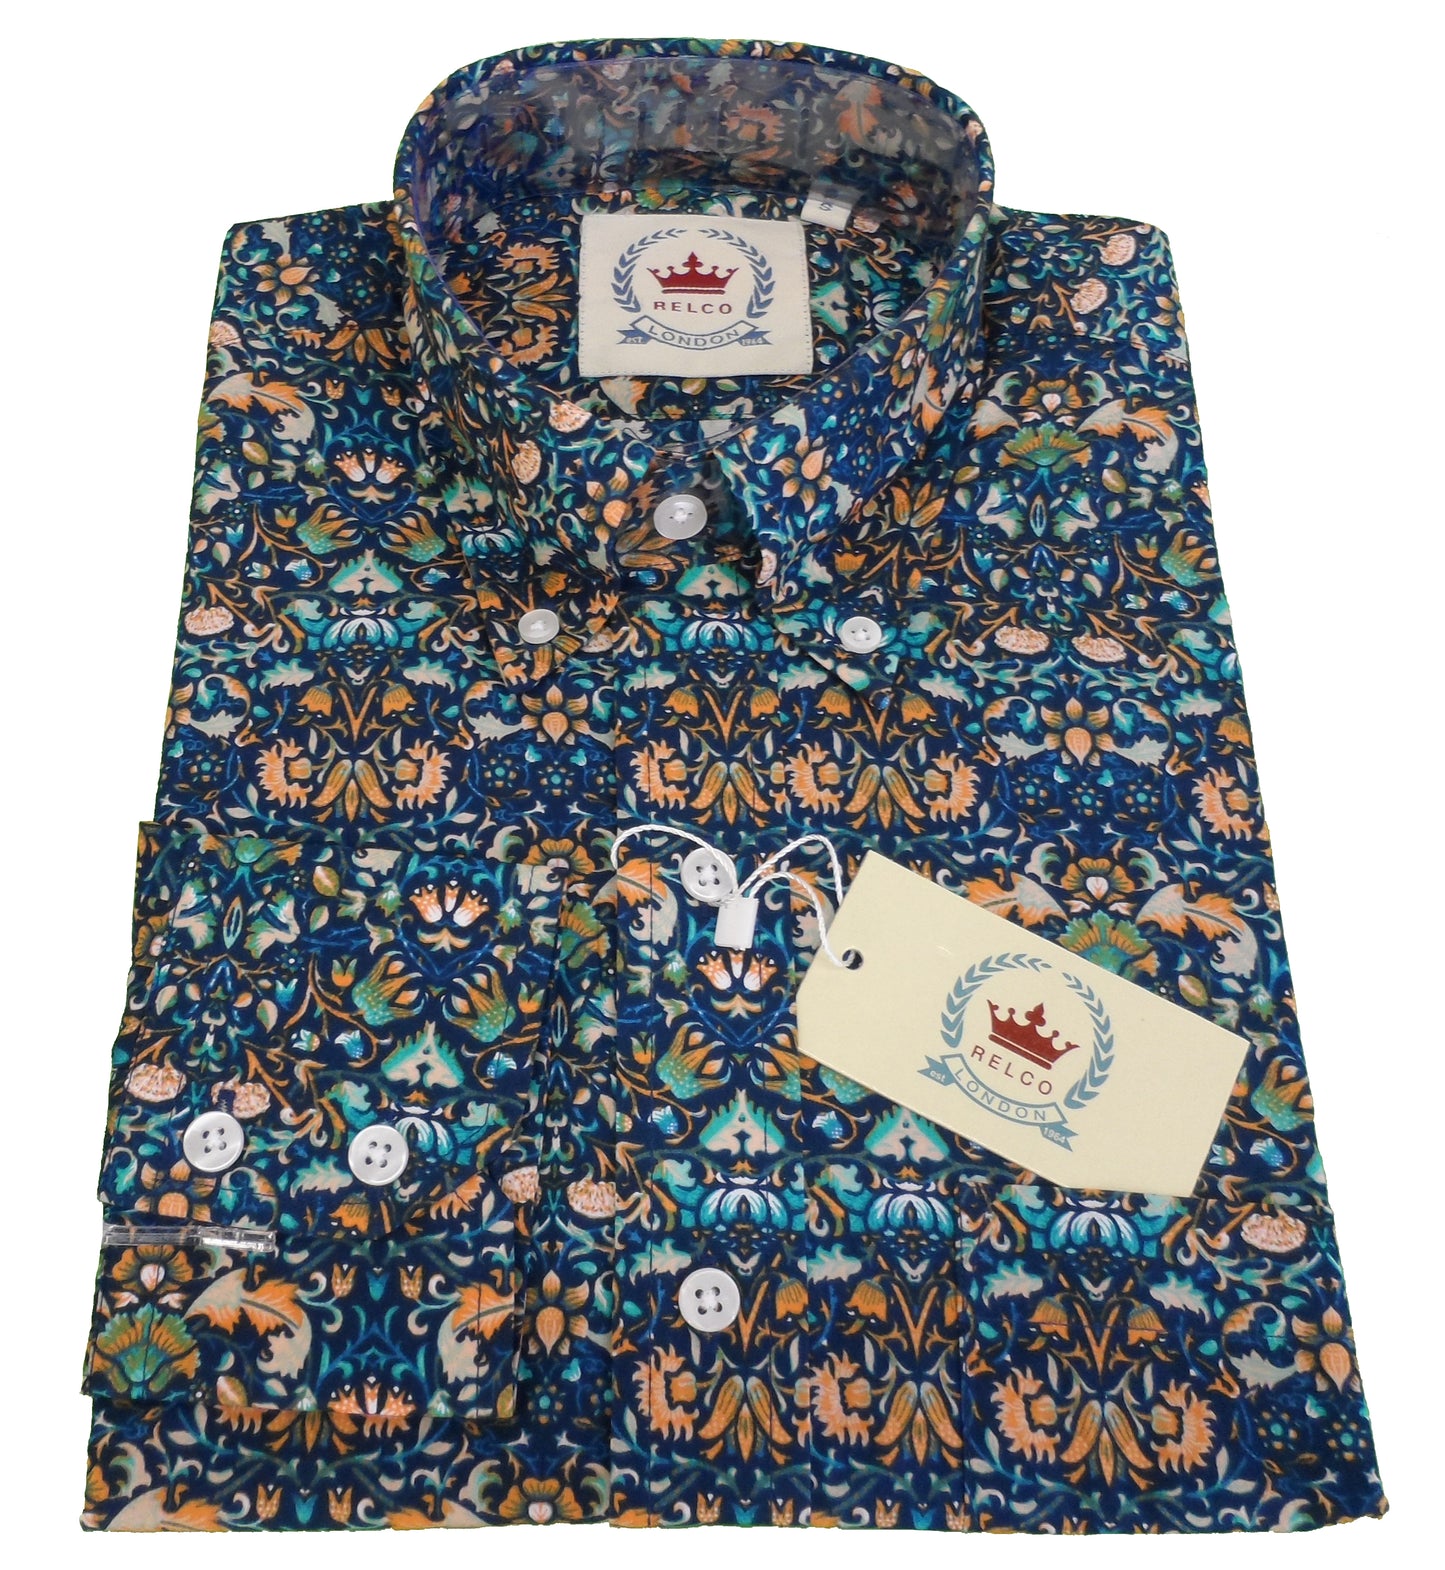 Camisas con botones florales retro azules para hombre Relco